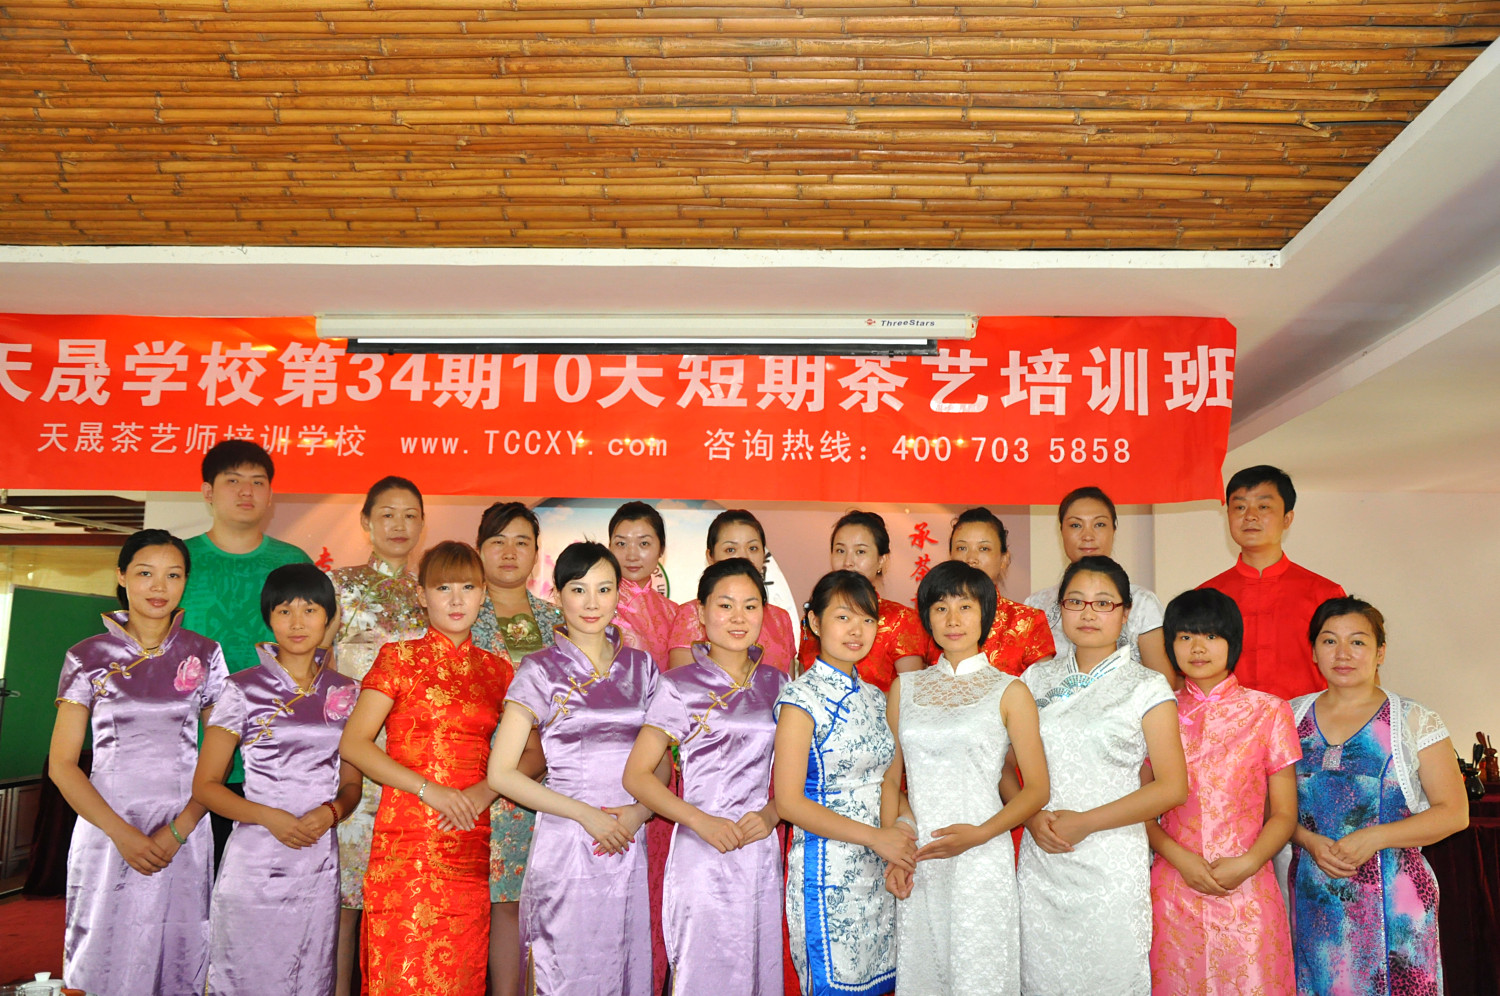 第34期天晟茶艺培训学校中国茶学系统培训班全体学员合照